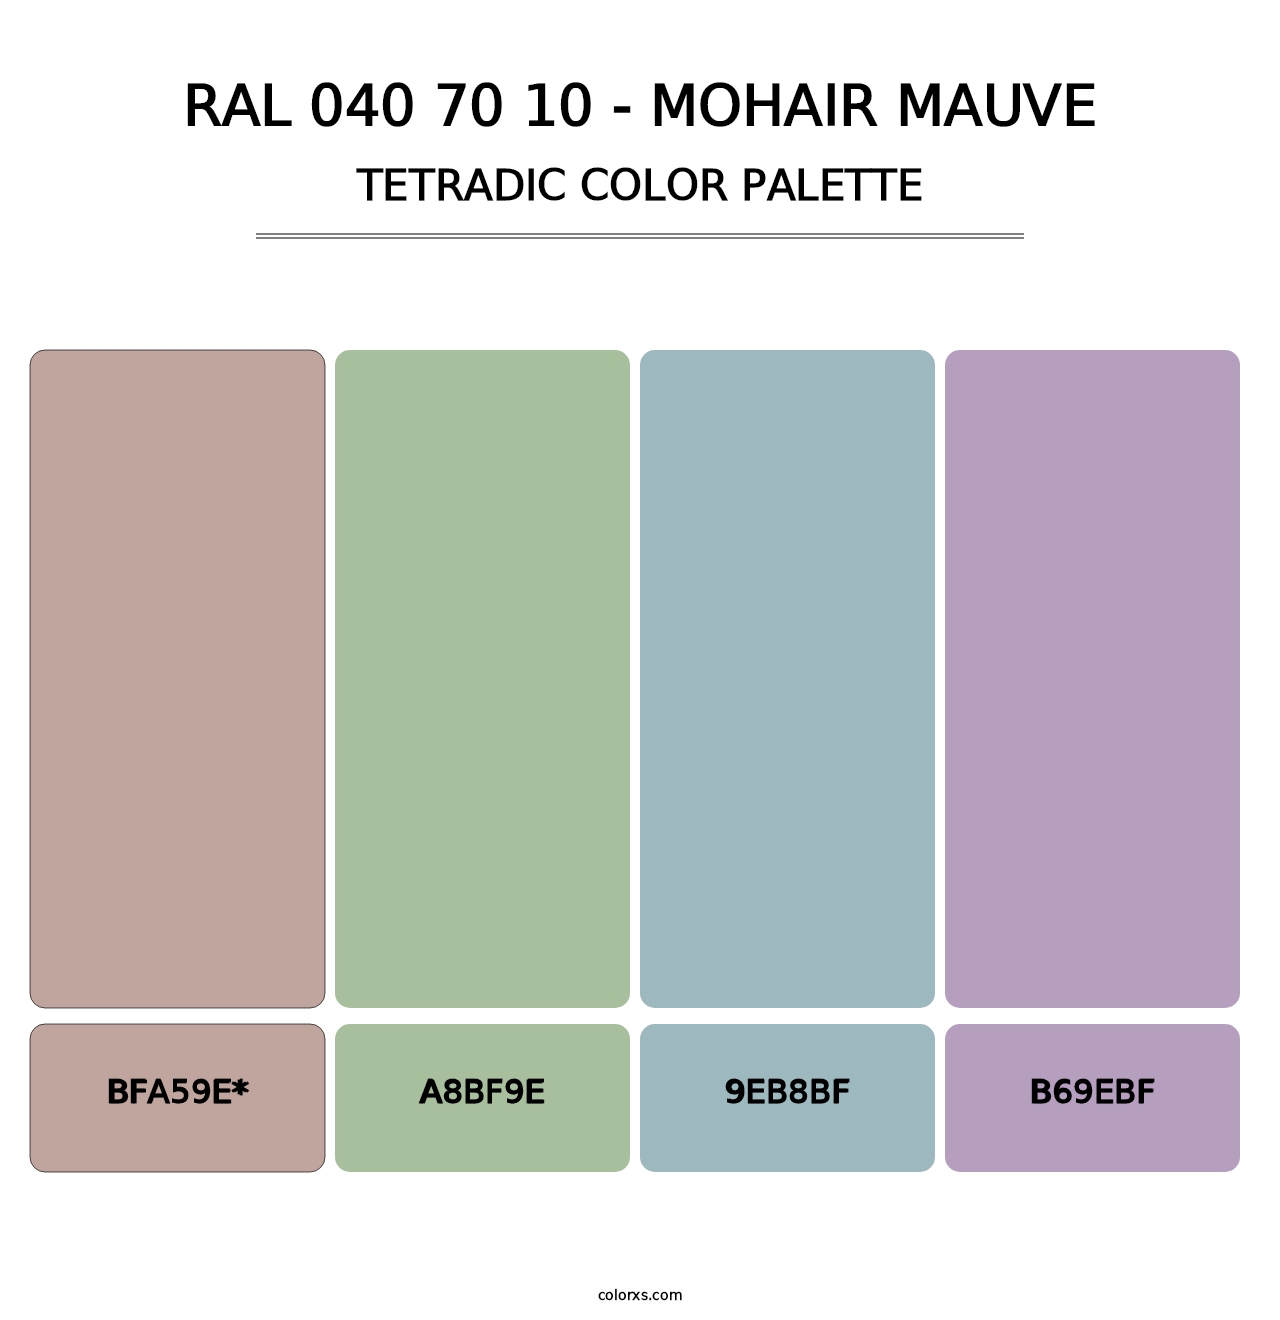 RAL 040 70 10 - Mohair Mauve - Tetradic Color Palette